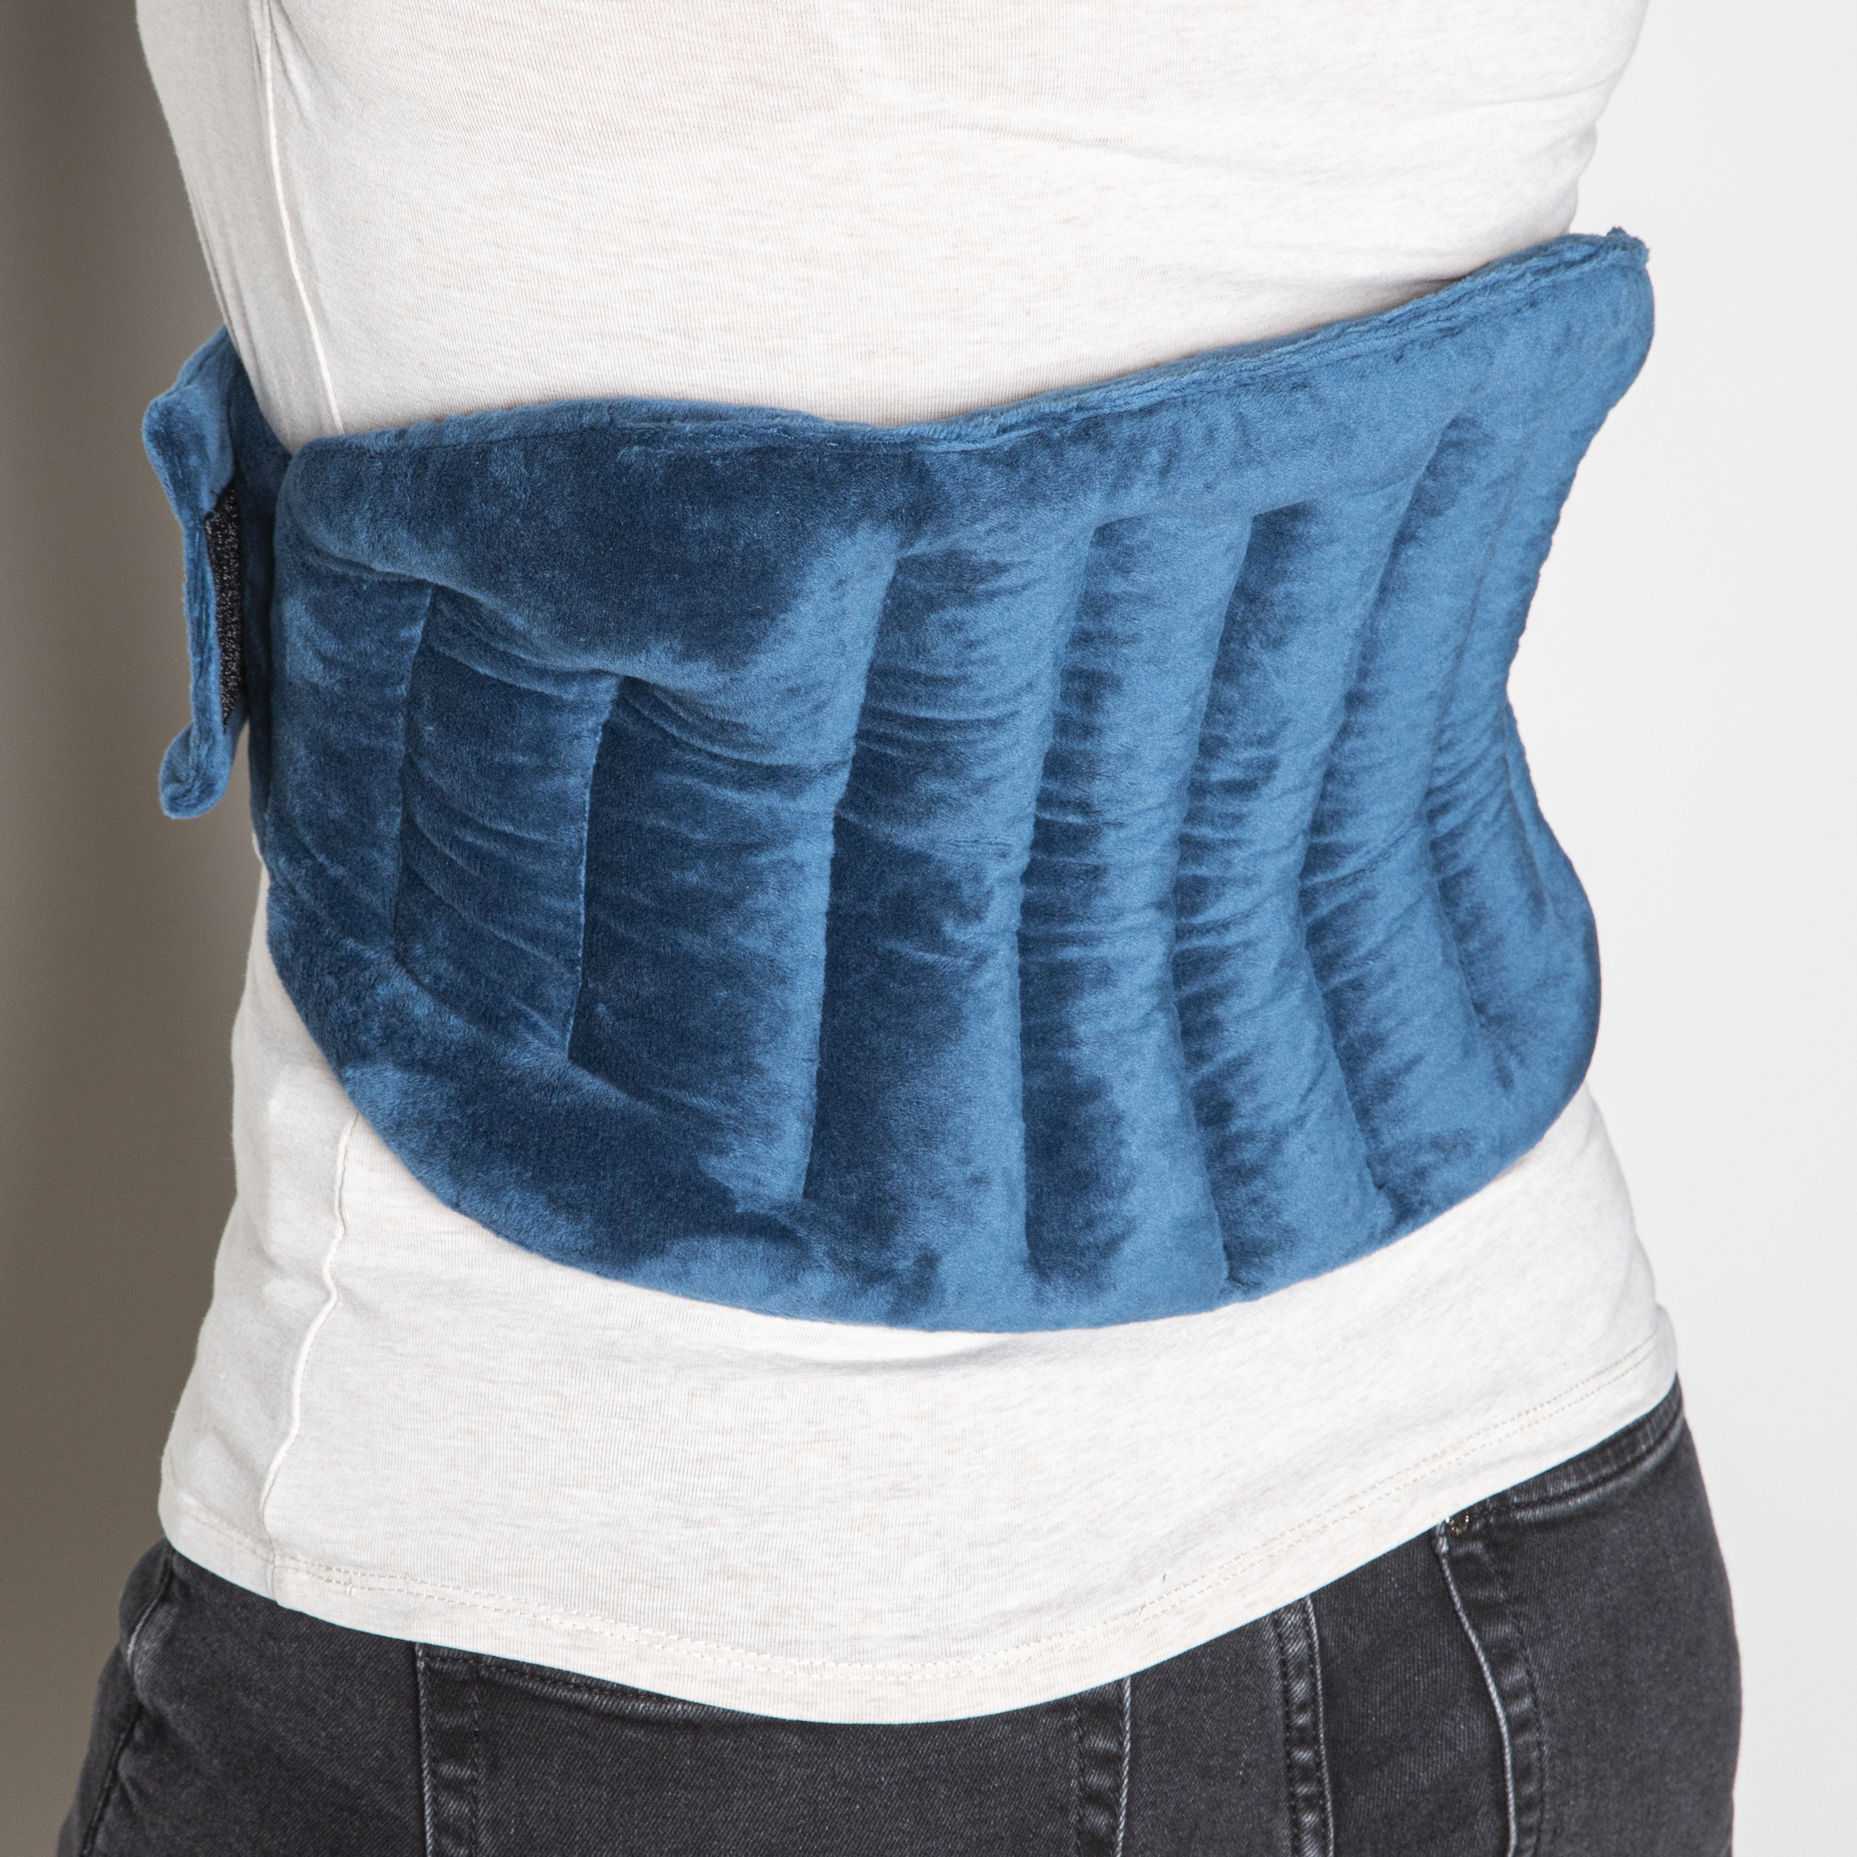 Wärmekissen in blau für die Mikrowelle - für Rücken oder Nacken - Nieren Schultern Kissen Wärme Therapie 